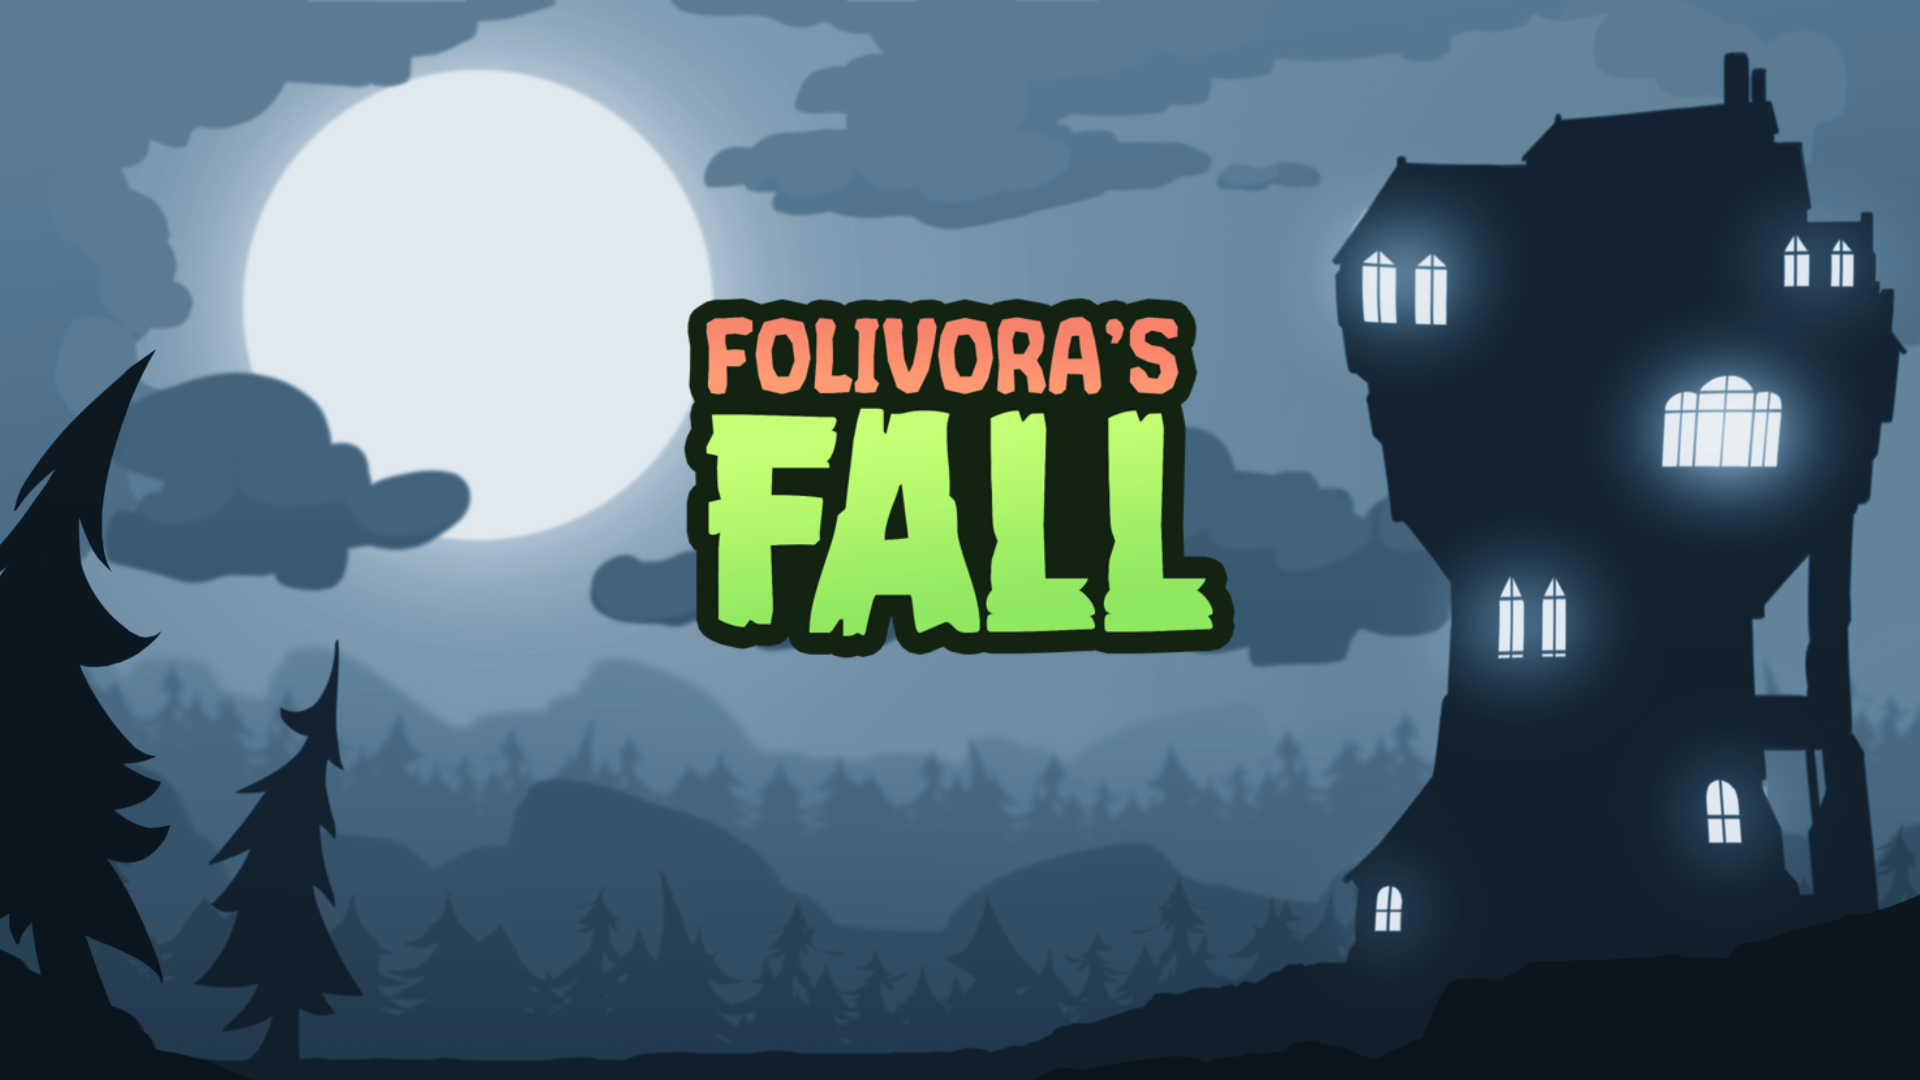 Folivora's Fall